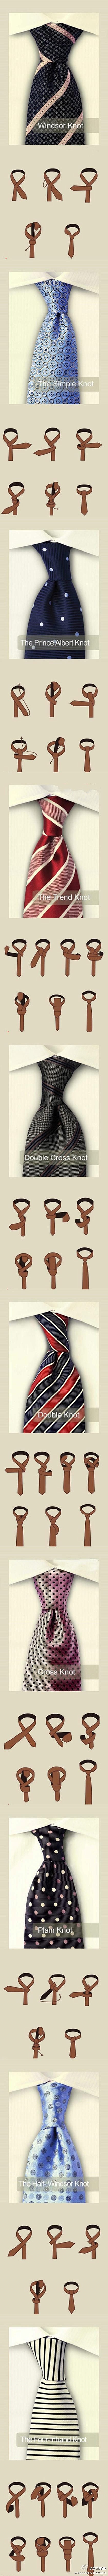 教你如何打领带+加意